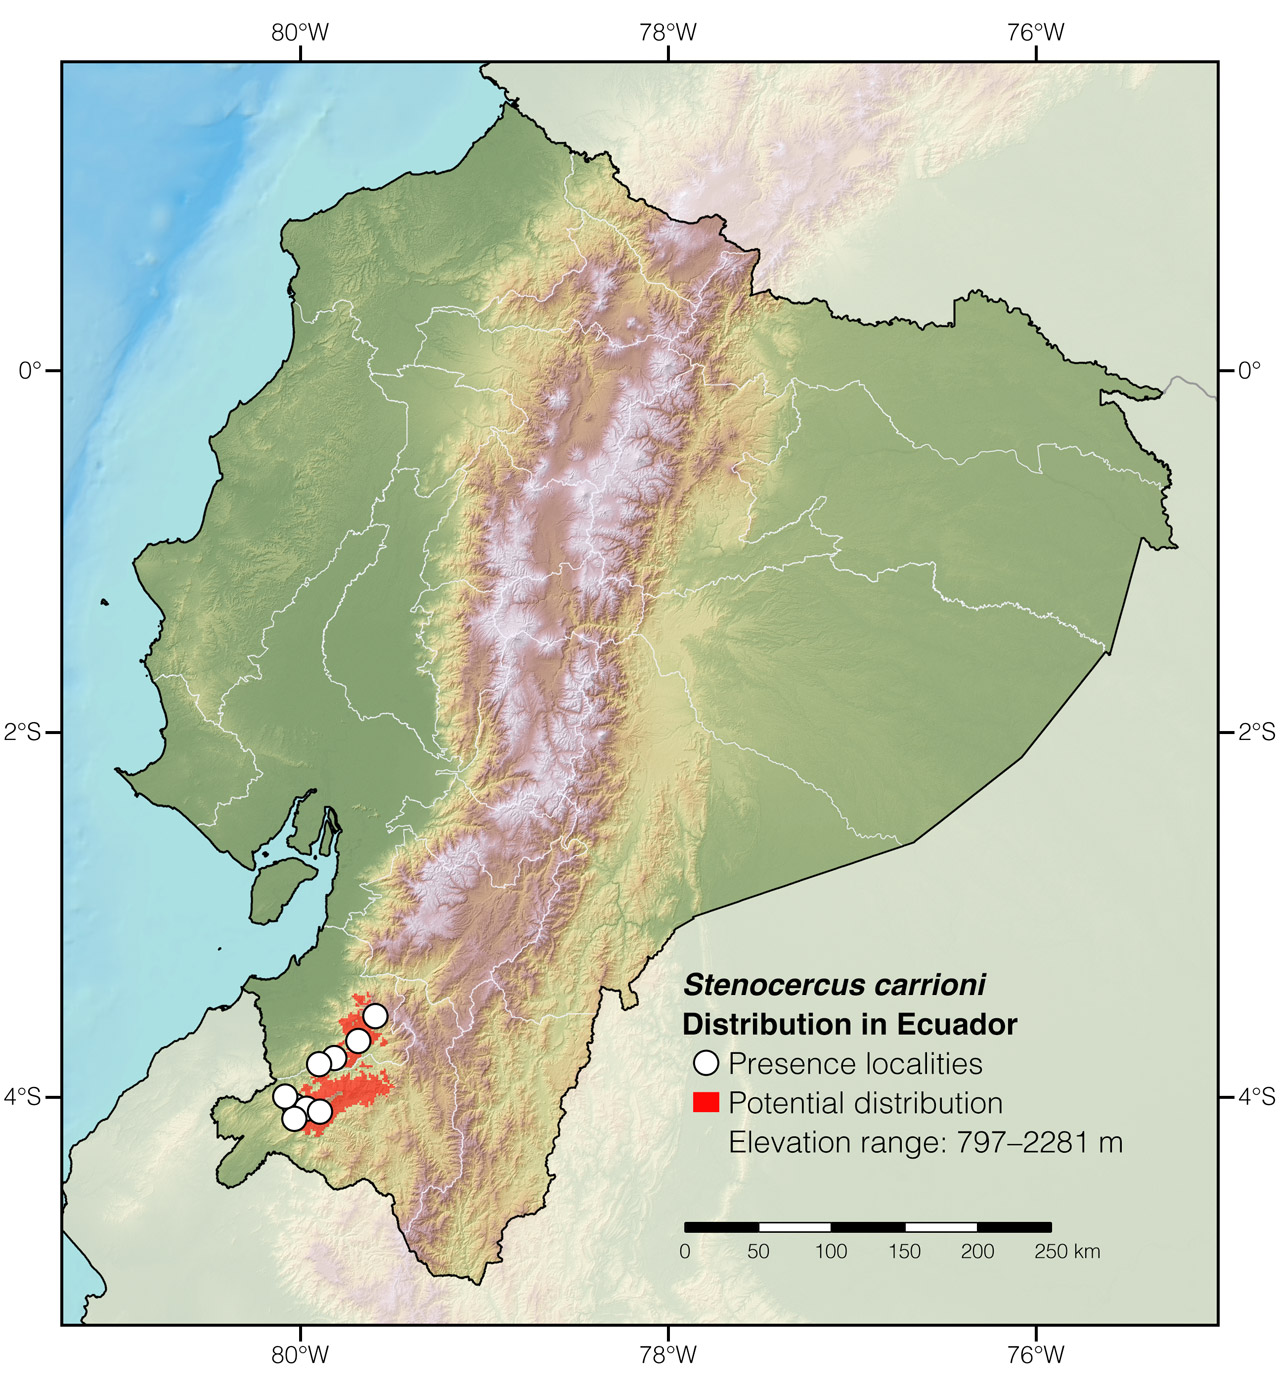 Distribution of Stenocercus carrioni in Ecuador